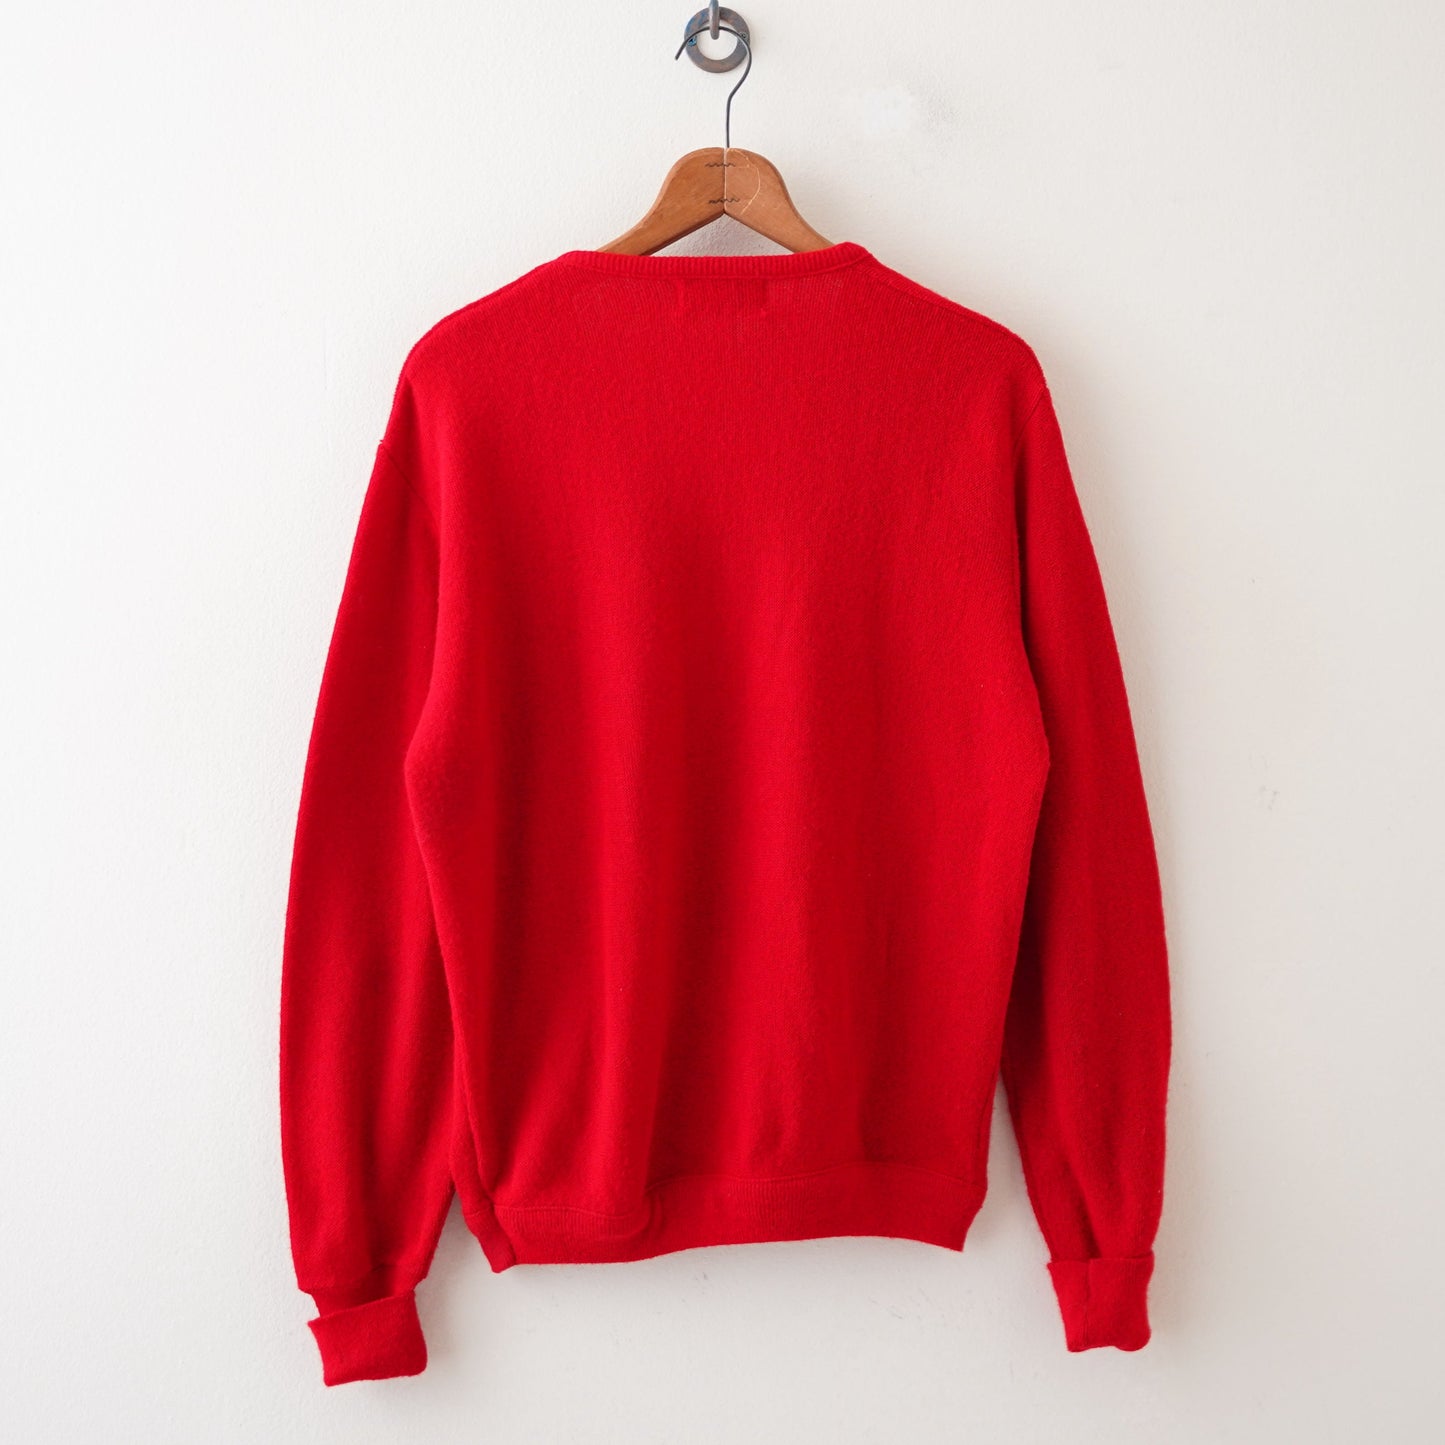 70s IZOD LACOSTE knit sweater